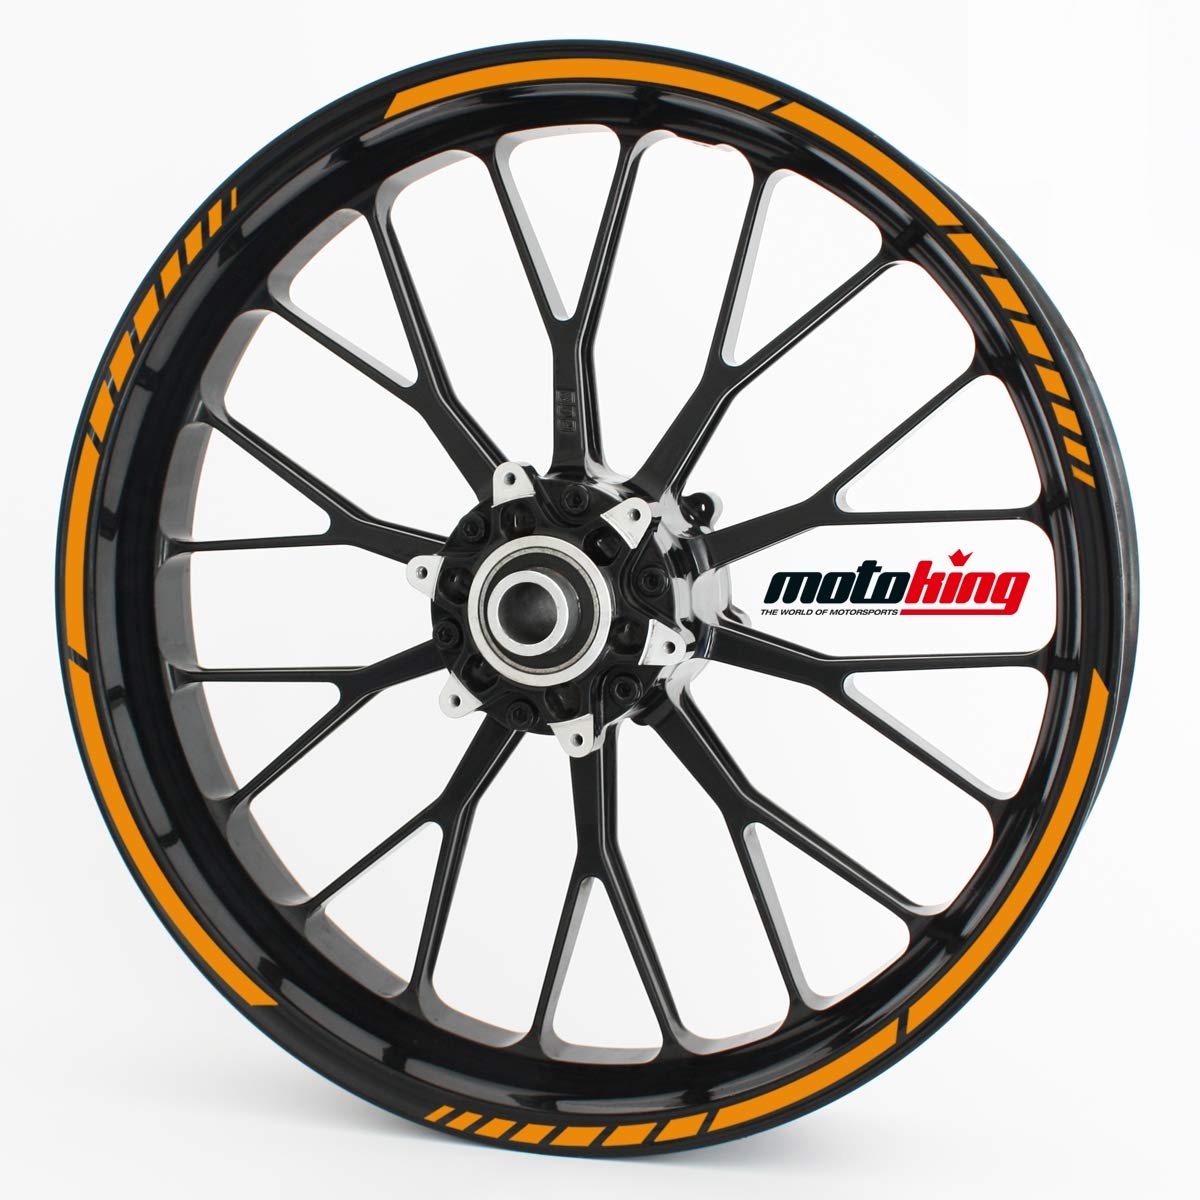 Felgenrandaufkleber GP im GP-Design passend für 13 Zoll Felgen für Motorrad, Auto & mehr - Orange matt von Motoking